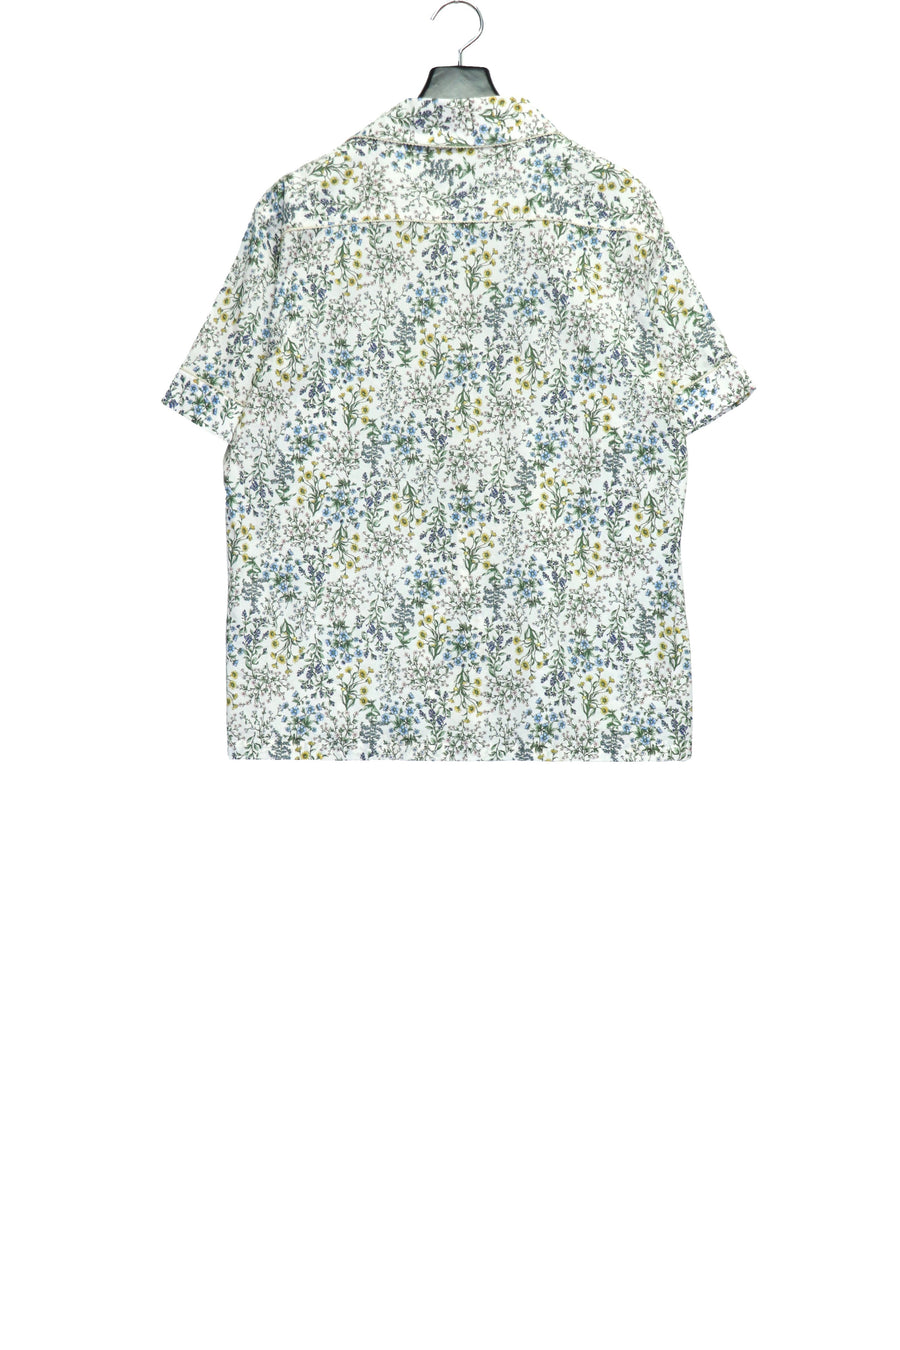 Taiga Igari  Dairy Pajamas Shirt(WHITE)